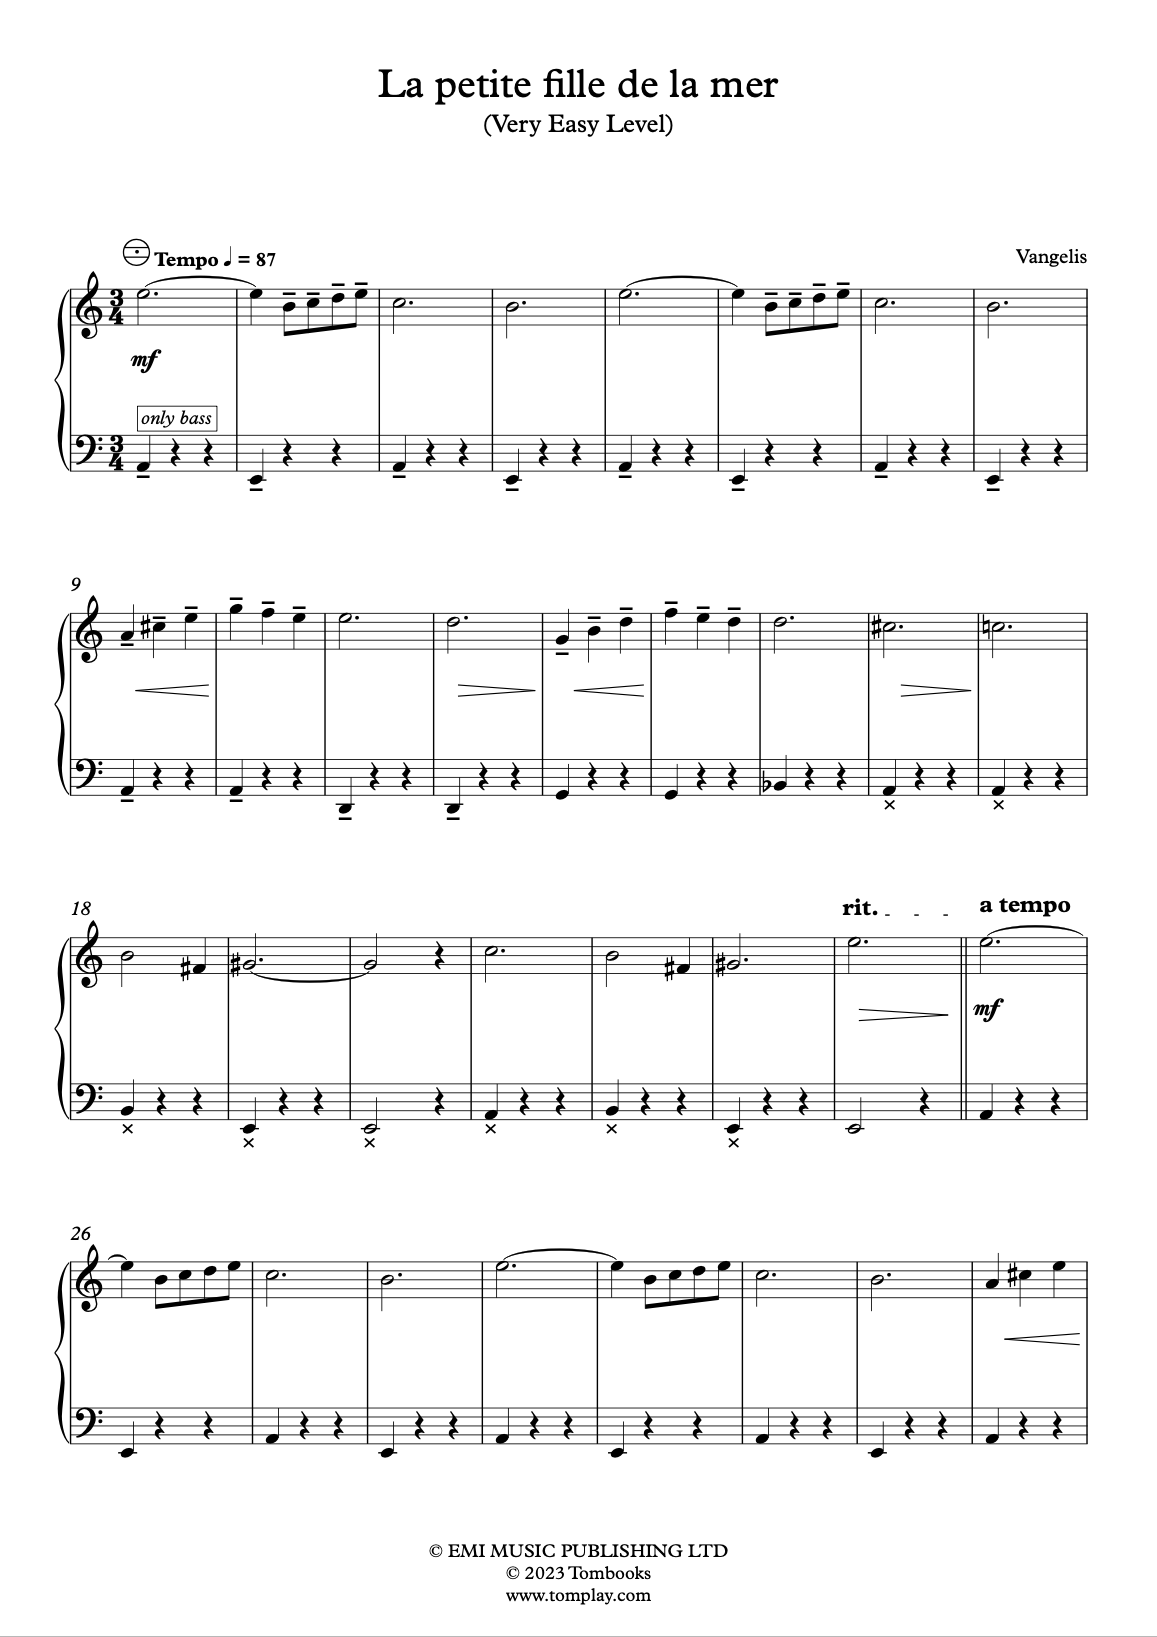 Vangelis - La Petite Fille de La Mer Sheet music for Piano (Solo